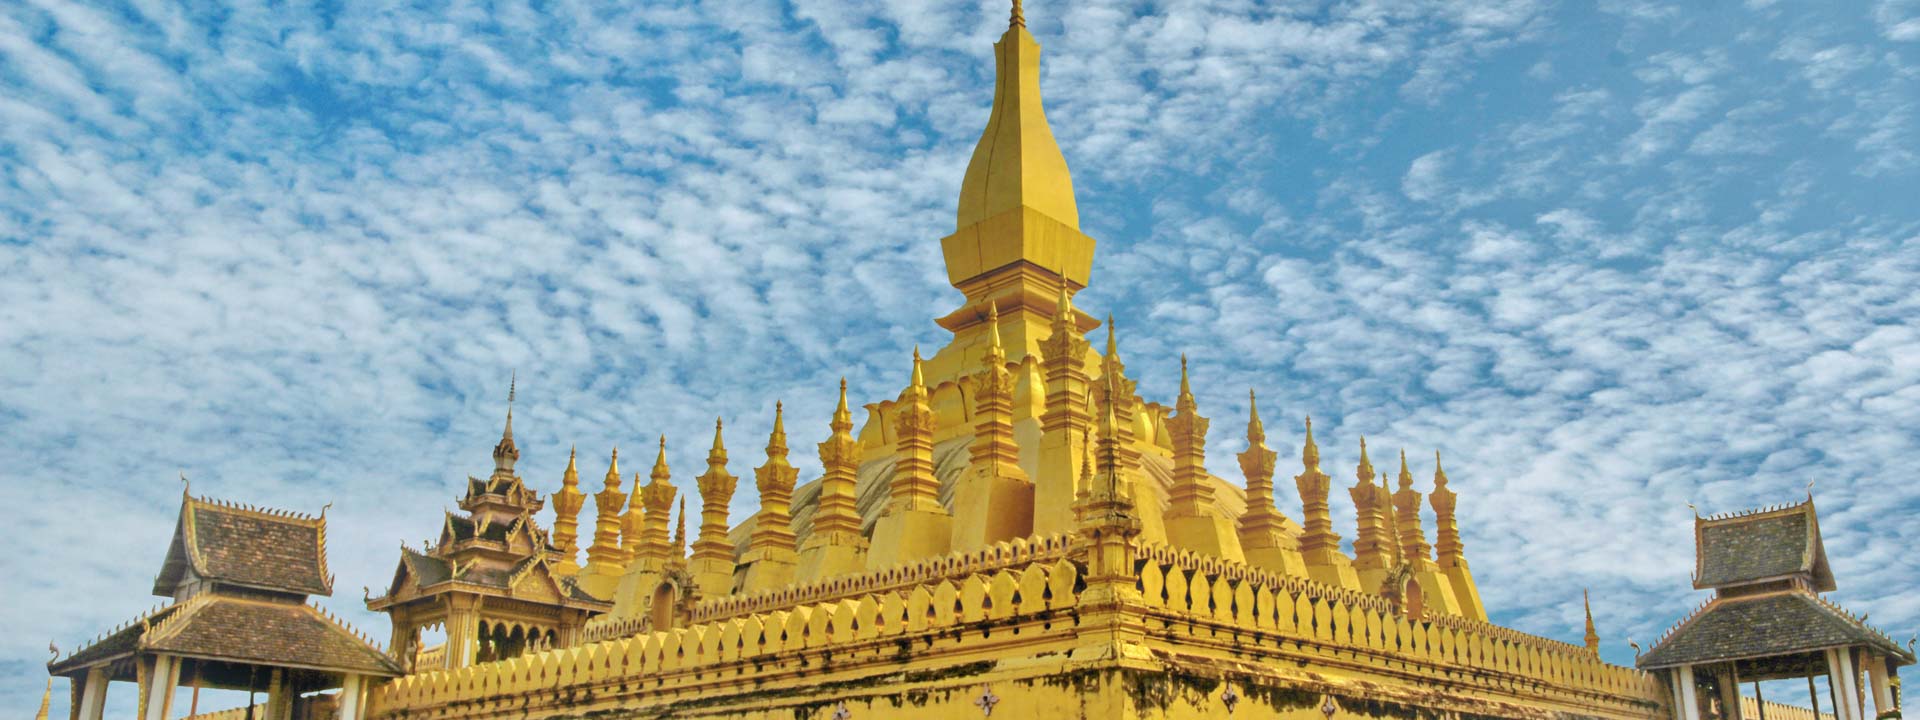 Best of Vietnam Cambodia Laos Tour 16 days